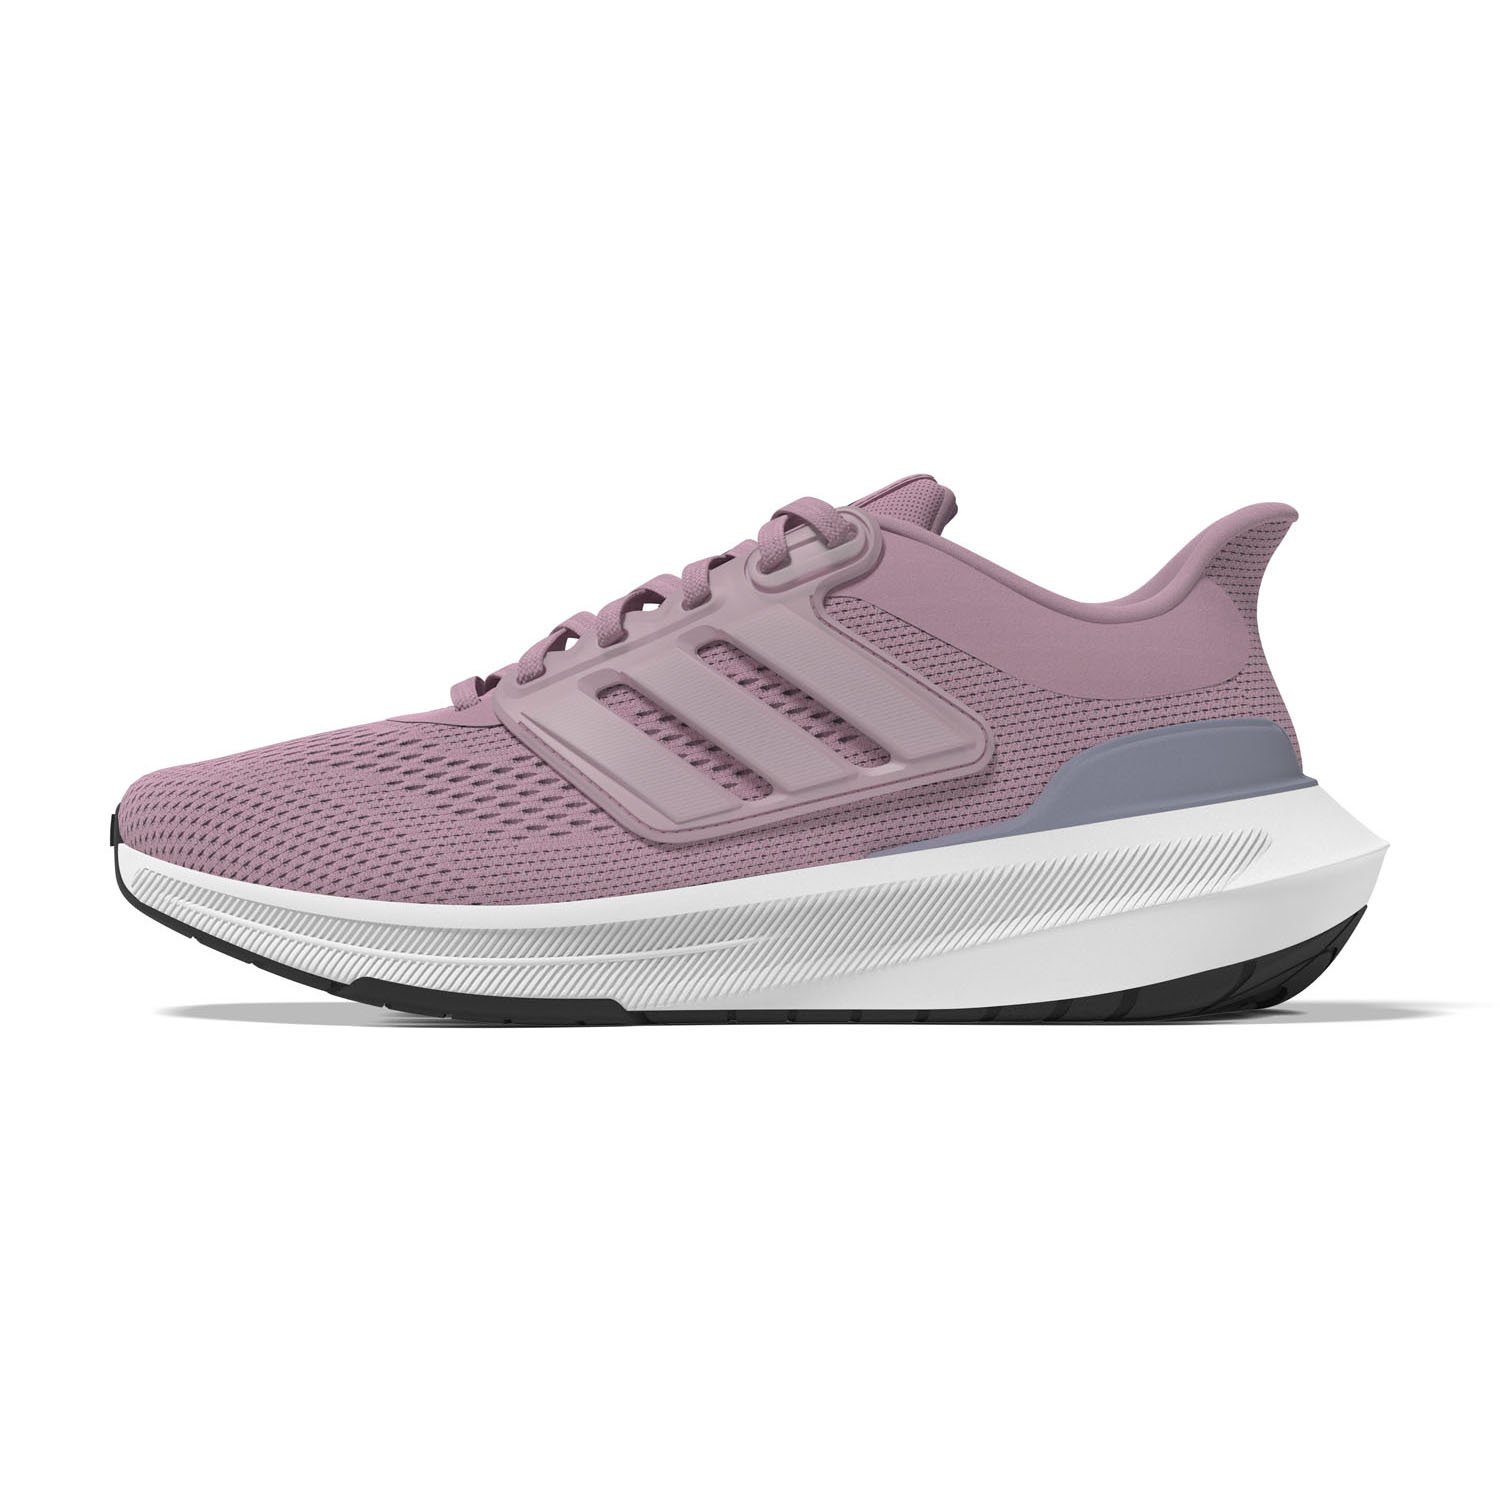 Adidas Ultrabounce Kadın Yol Koşu Ayakkabısı - Pembe - 1